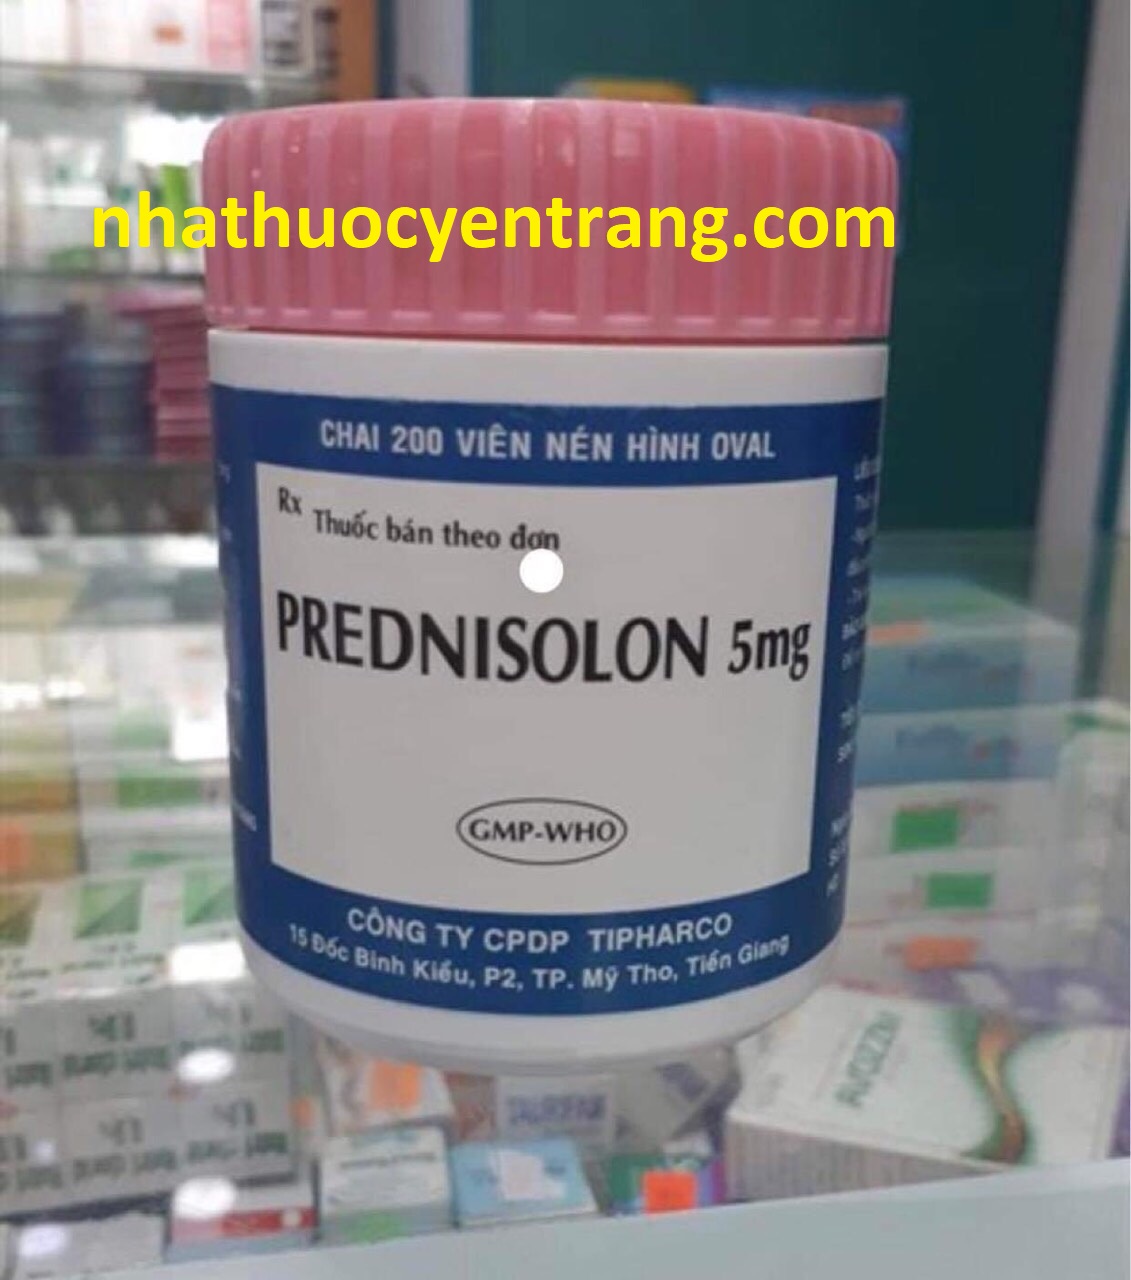 Prednisolon 5mg (200 viên)